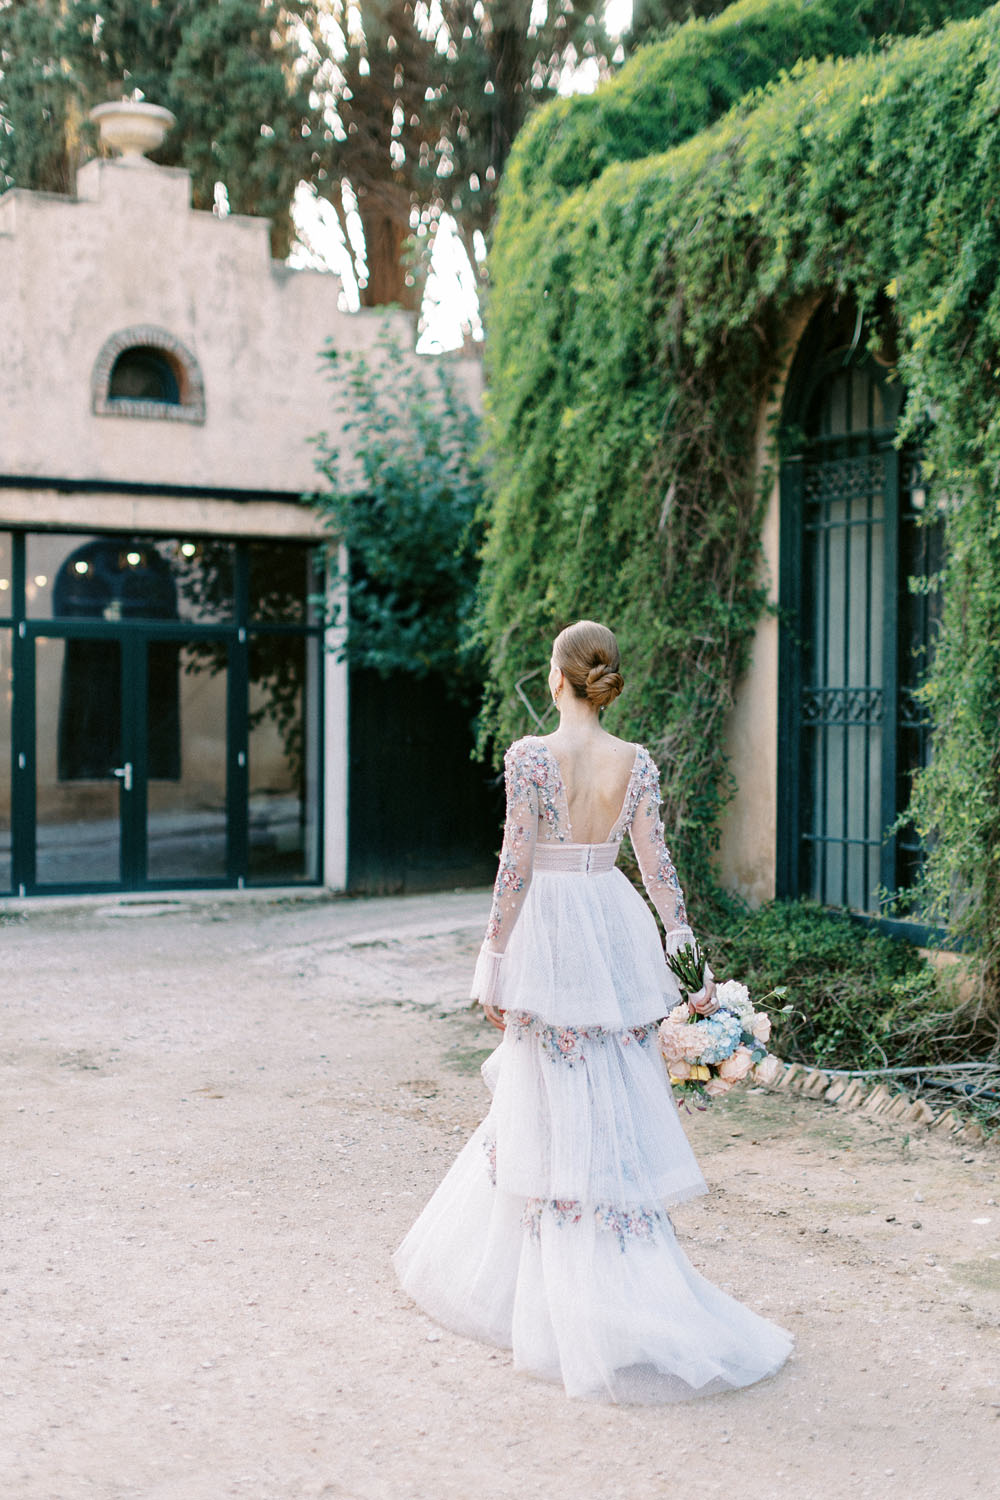 Embellished wedding dress at Greek castle wedding